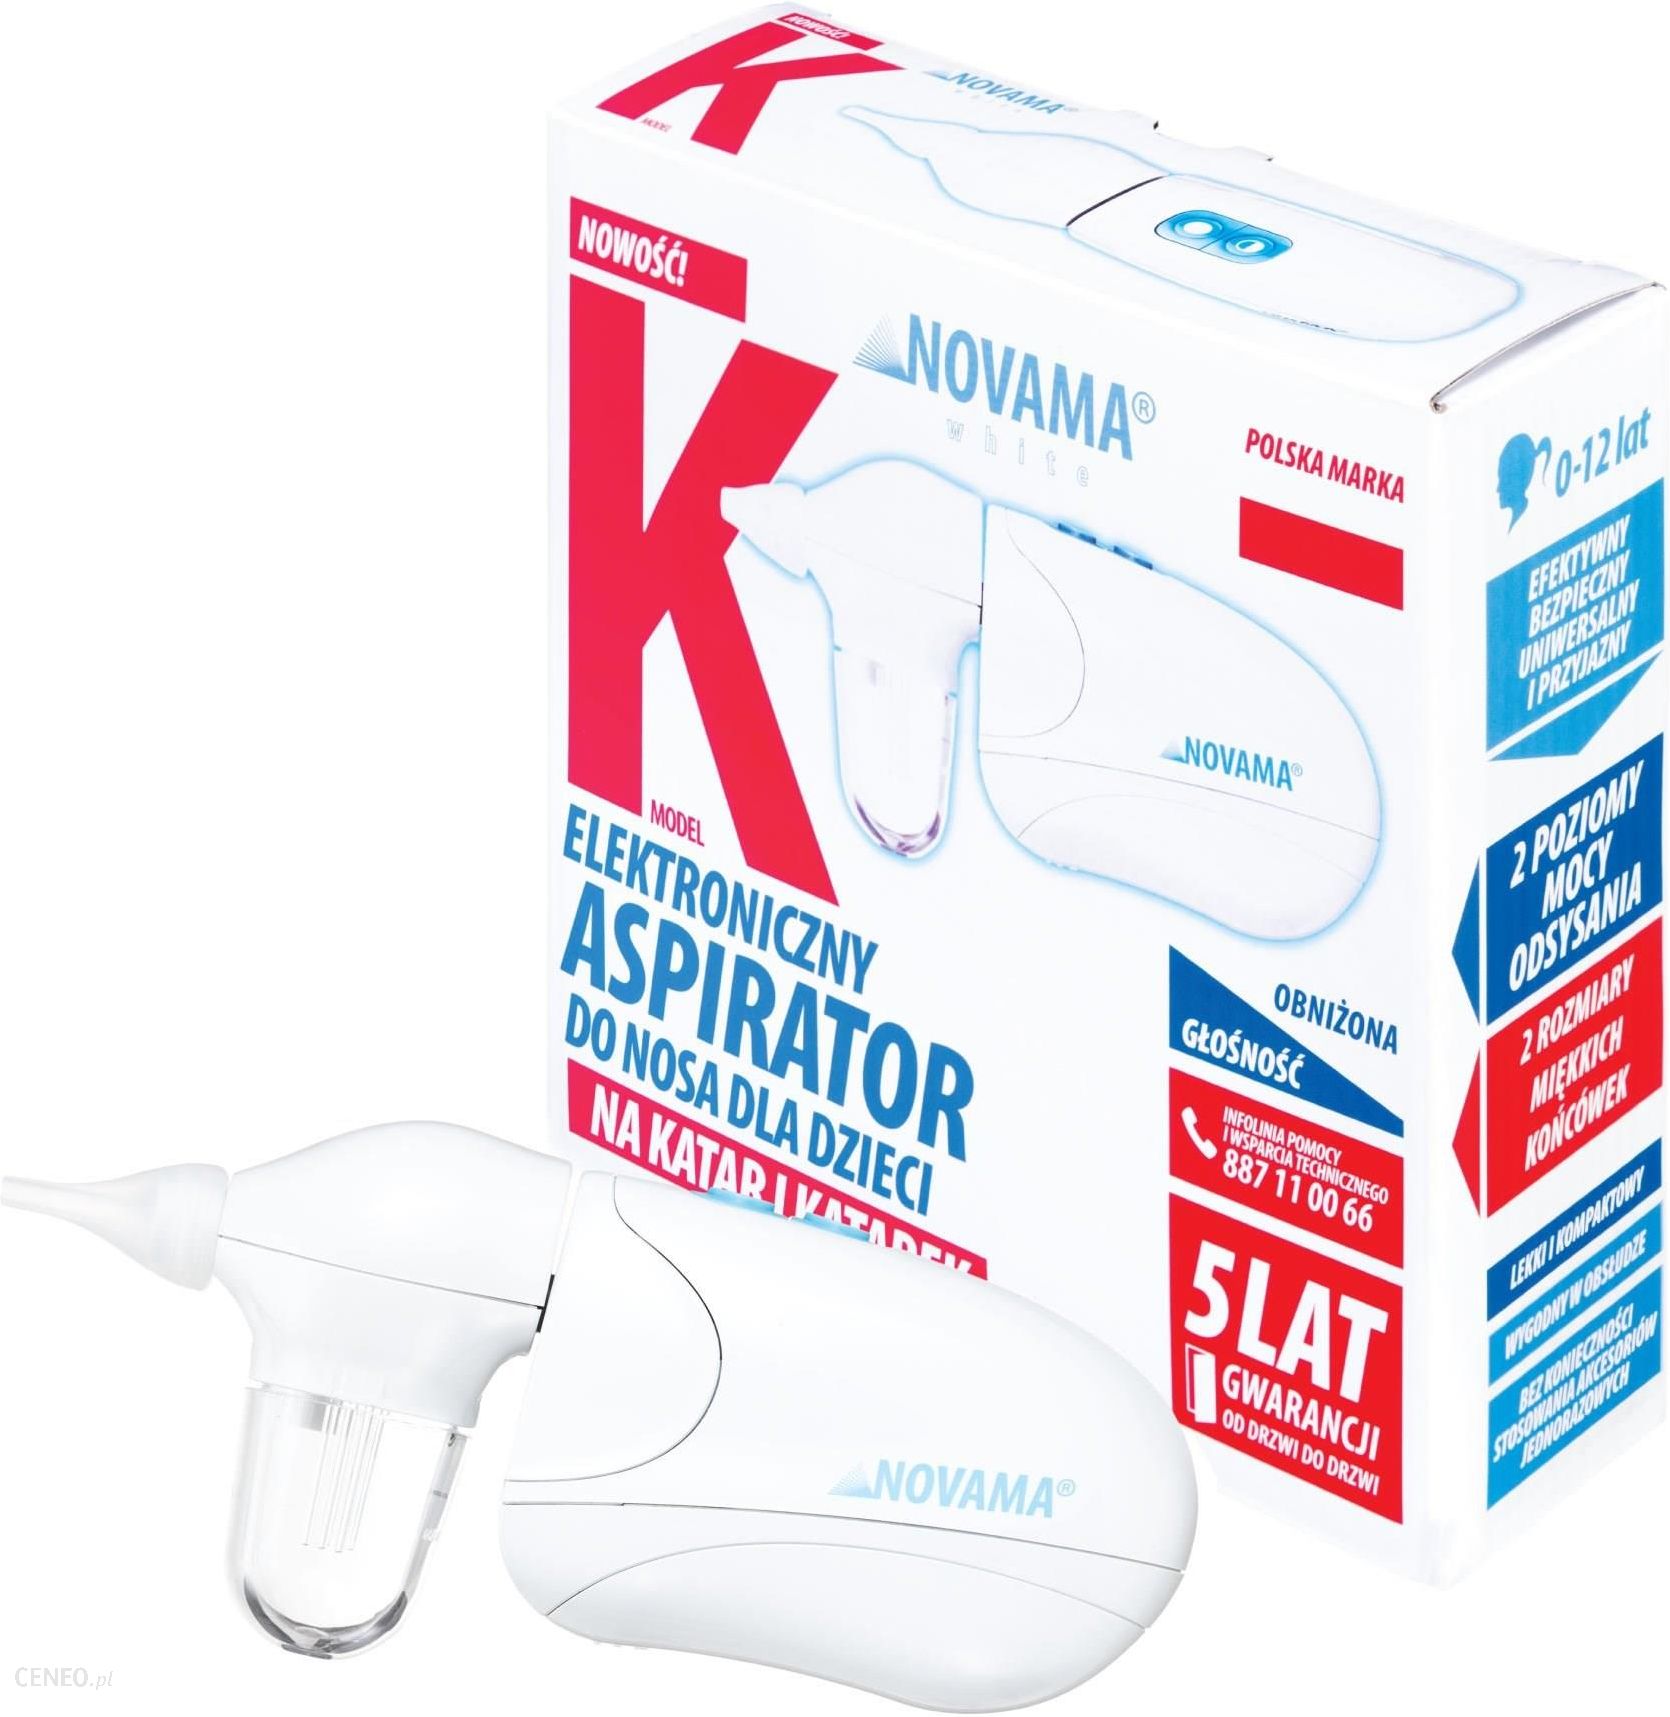  Novama White K Aspirator elektryczny do nosa na katar i katarek